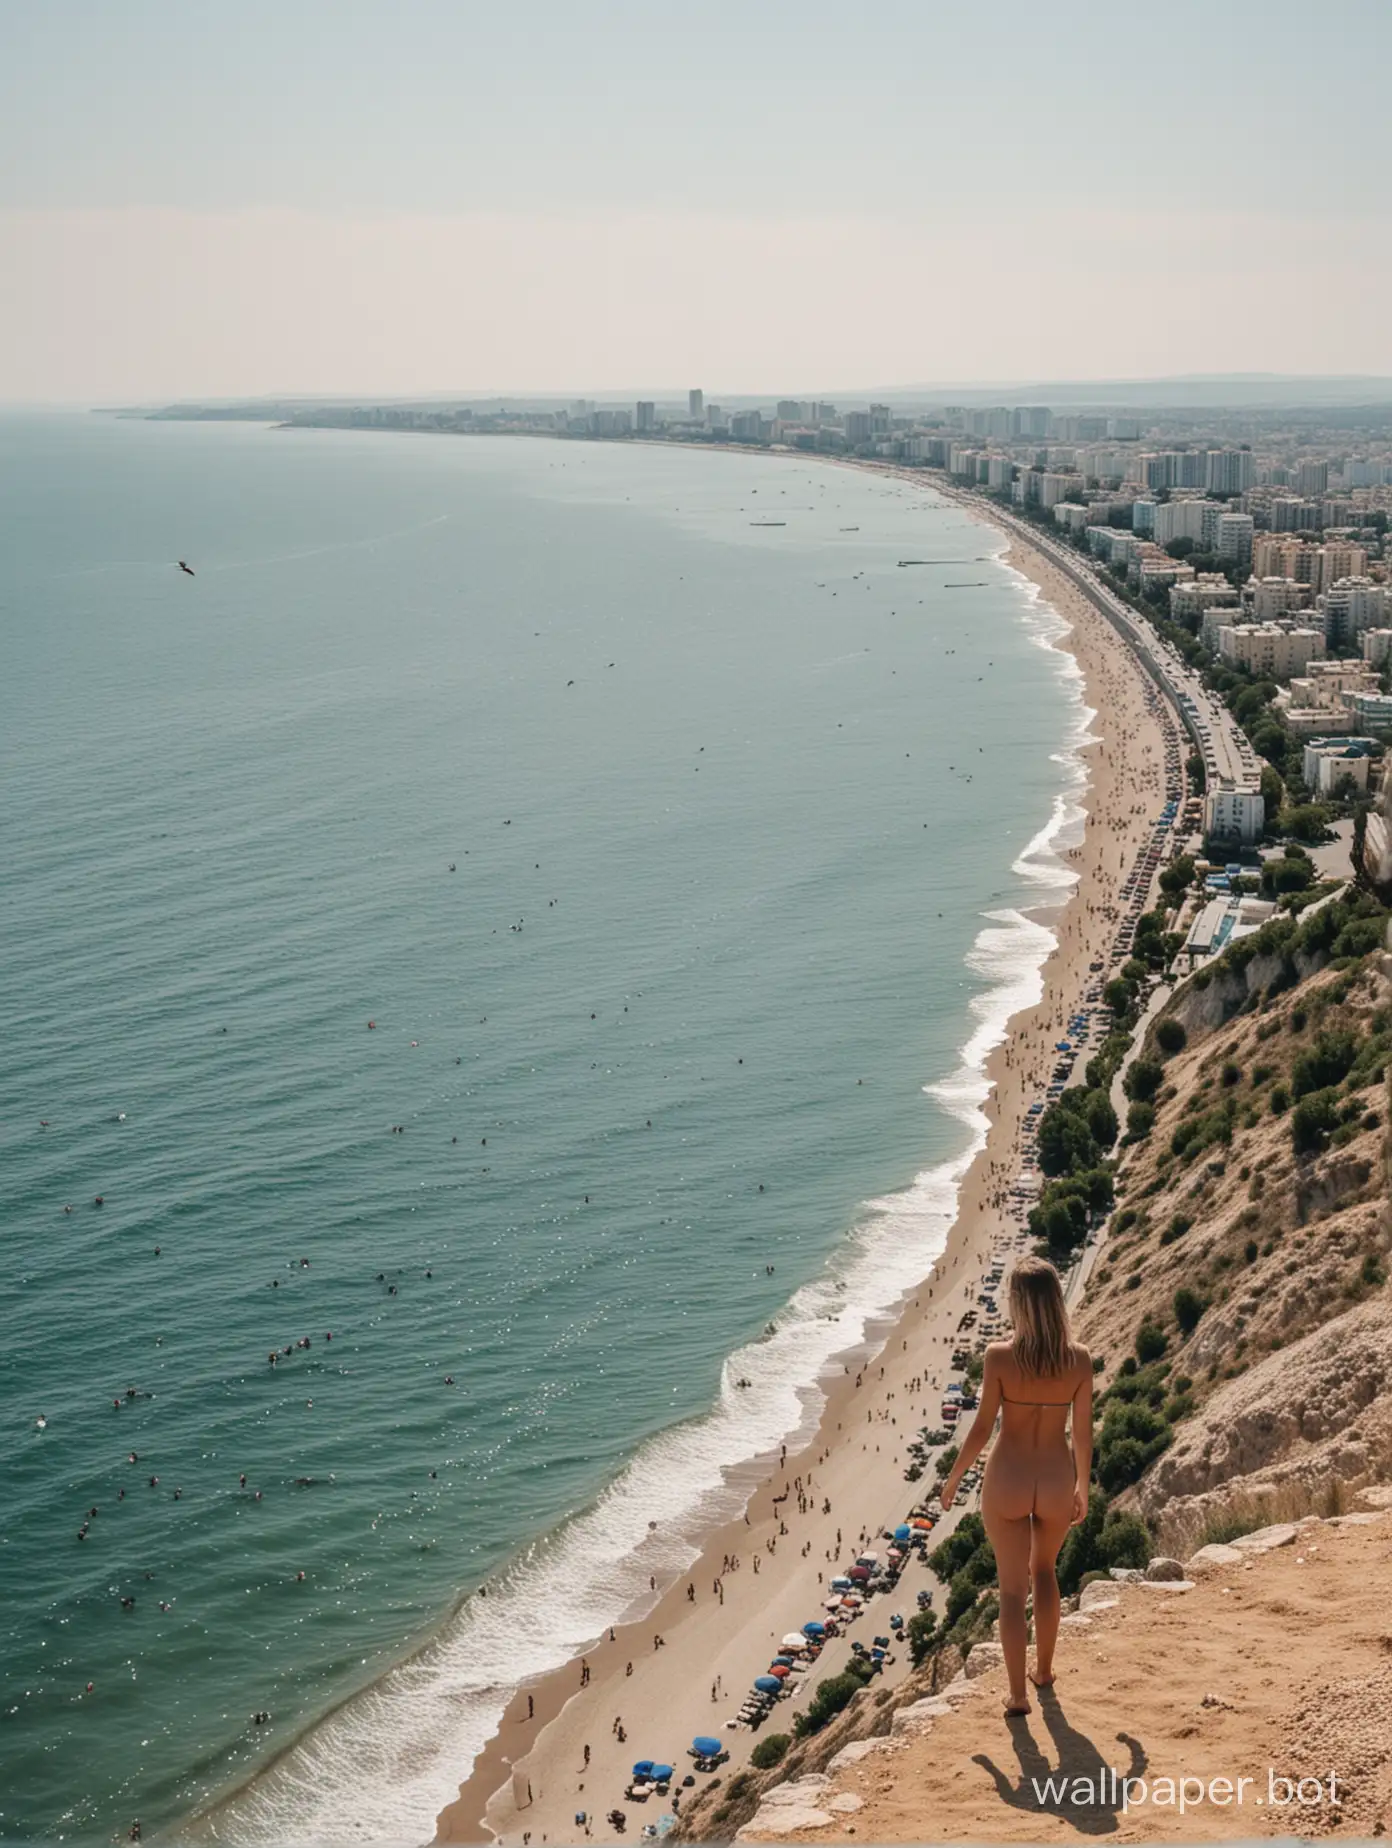 Вид на город вдалеке на фоне моря, Крым, лето, люди, птицы, нудистский пляж вдалеке